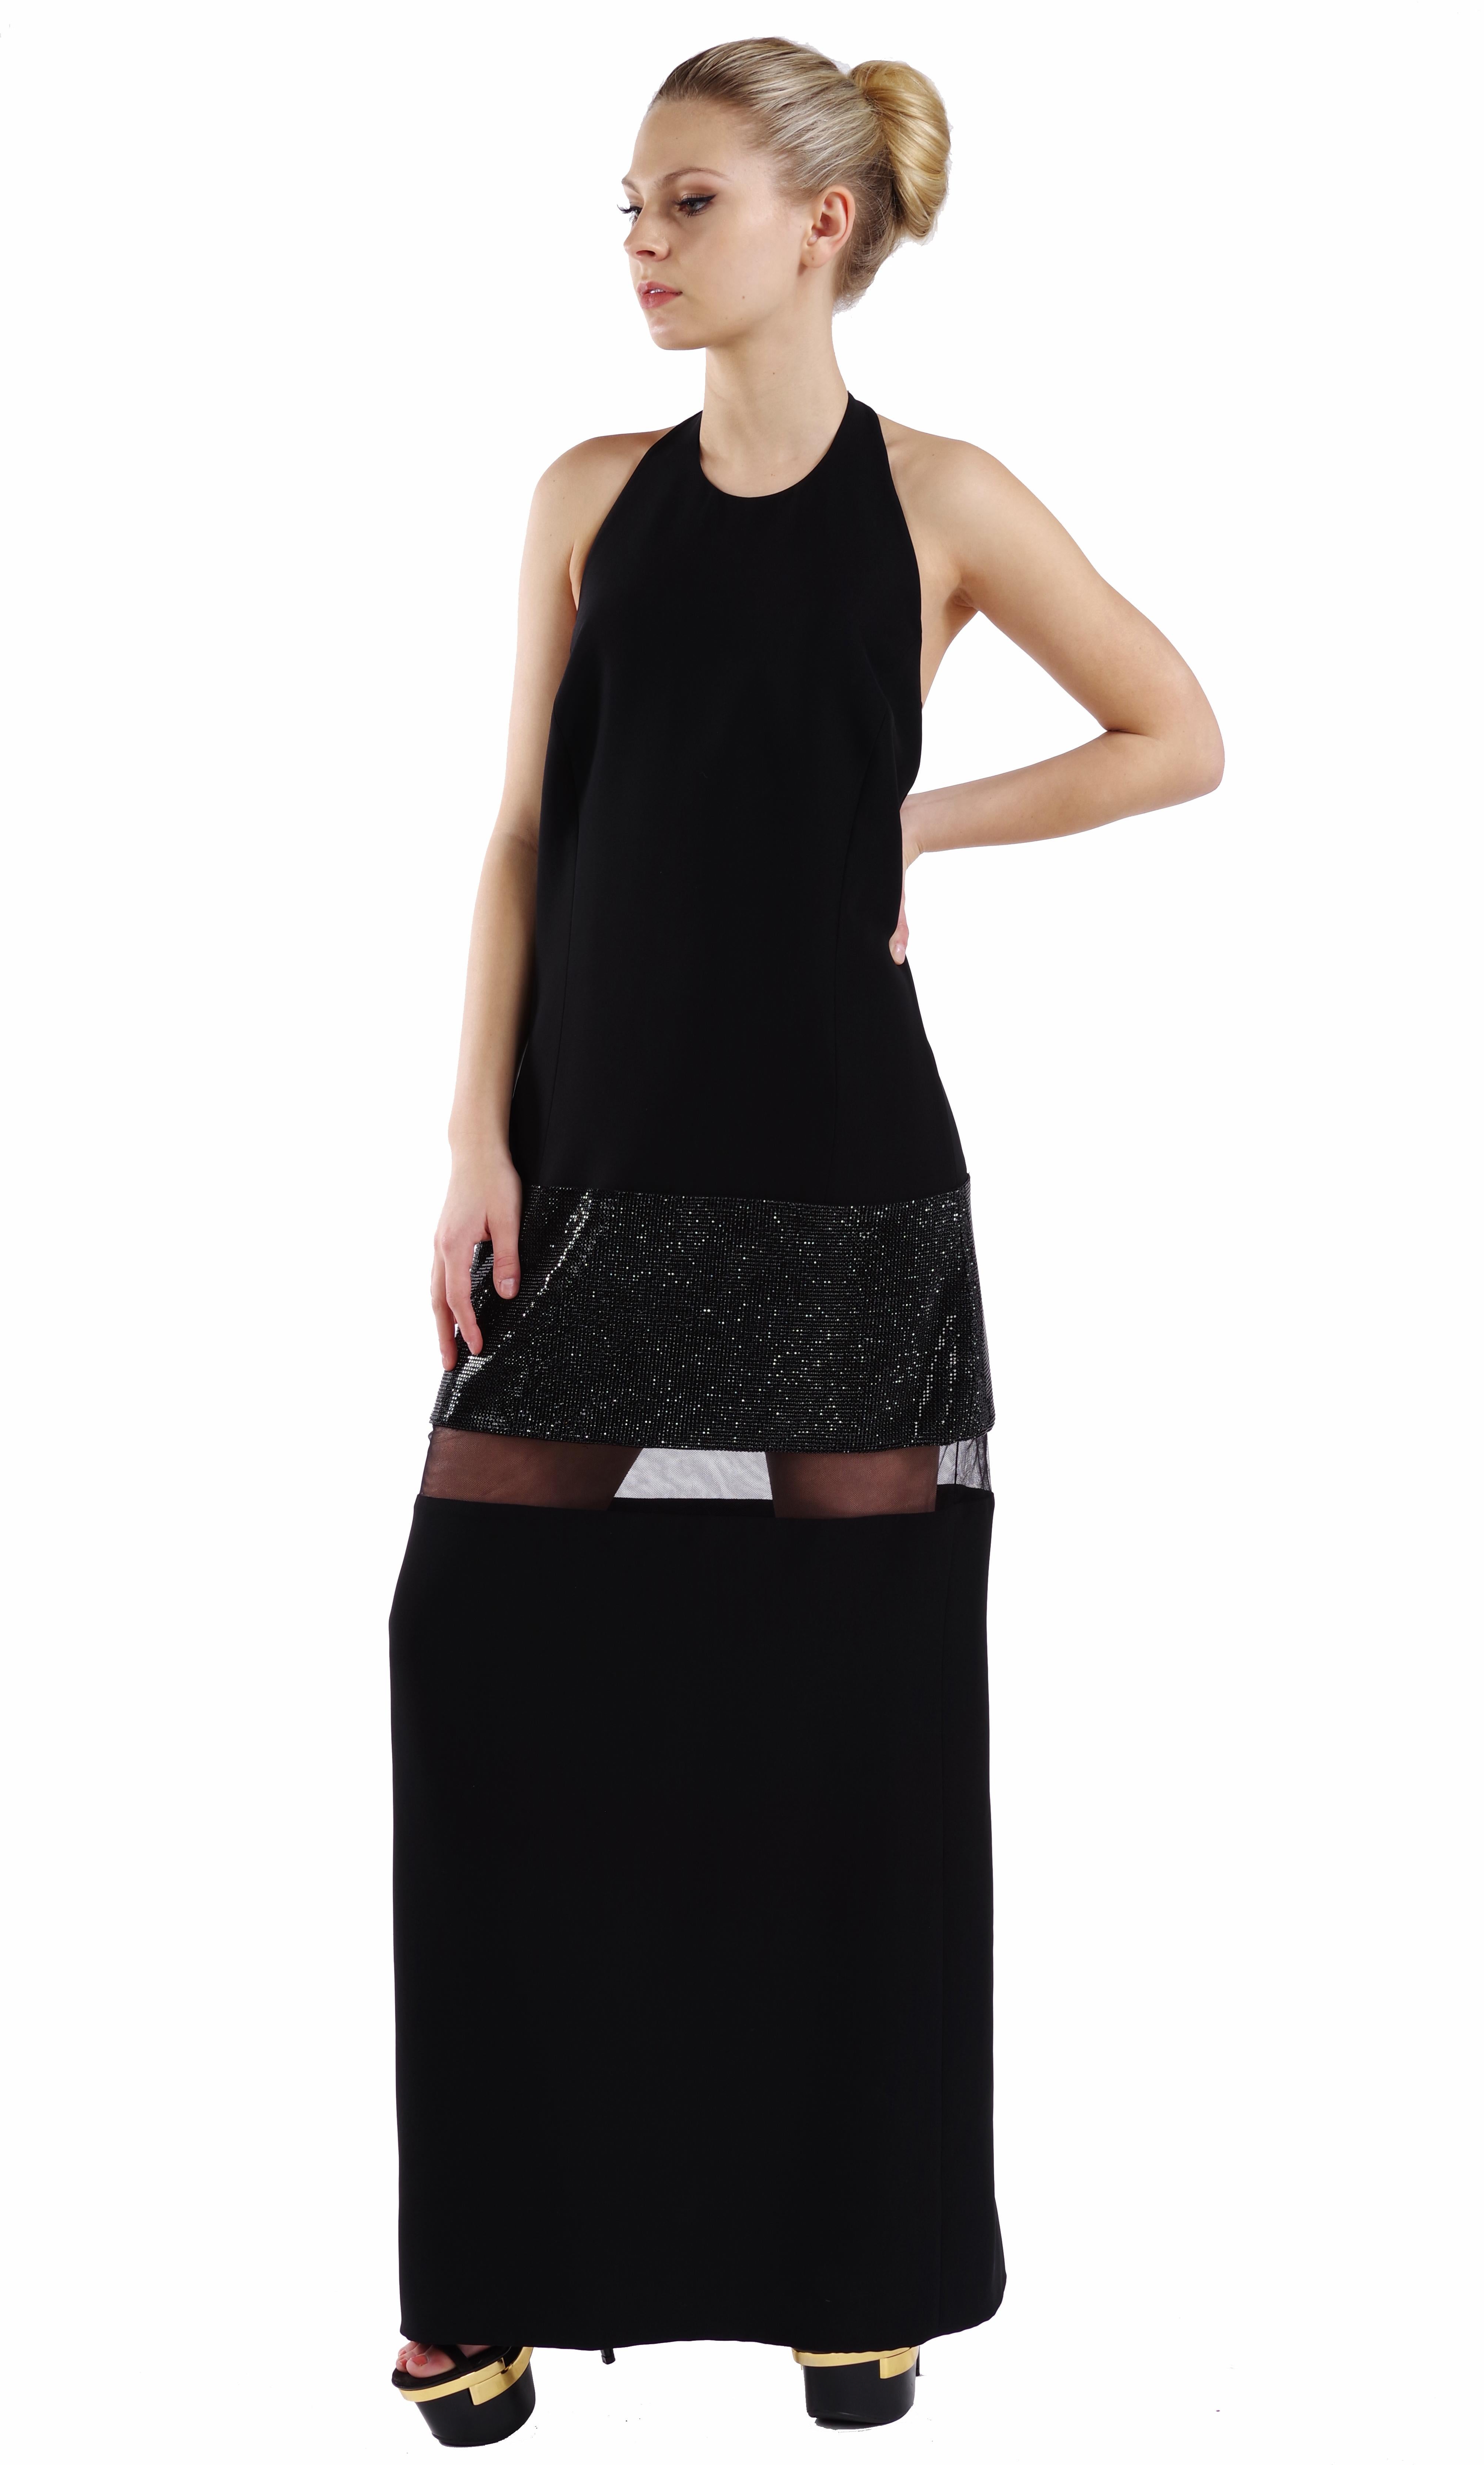 VERSACE 


S/S 2015 Look # 42

Langes Kleid mit Kristallverzierung

Das schwarze Seidenkleid von Versace ist der Inbegriff von glamouröser Eleganz. 

Es hat eine gerade Silhouette mit durchsichtigem Mesh-Tüll und schwarzer